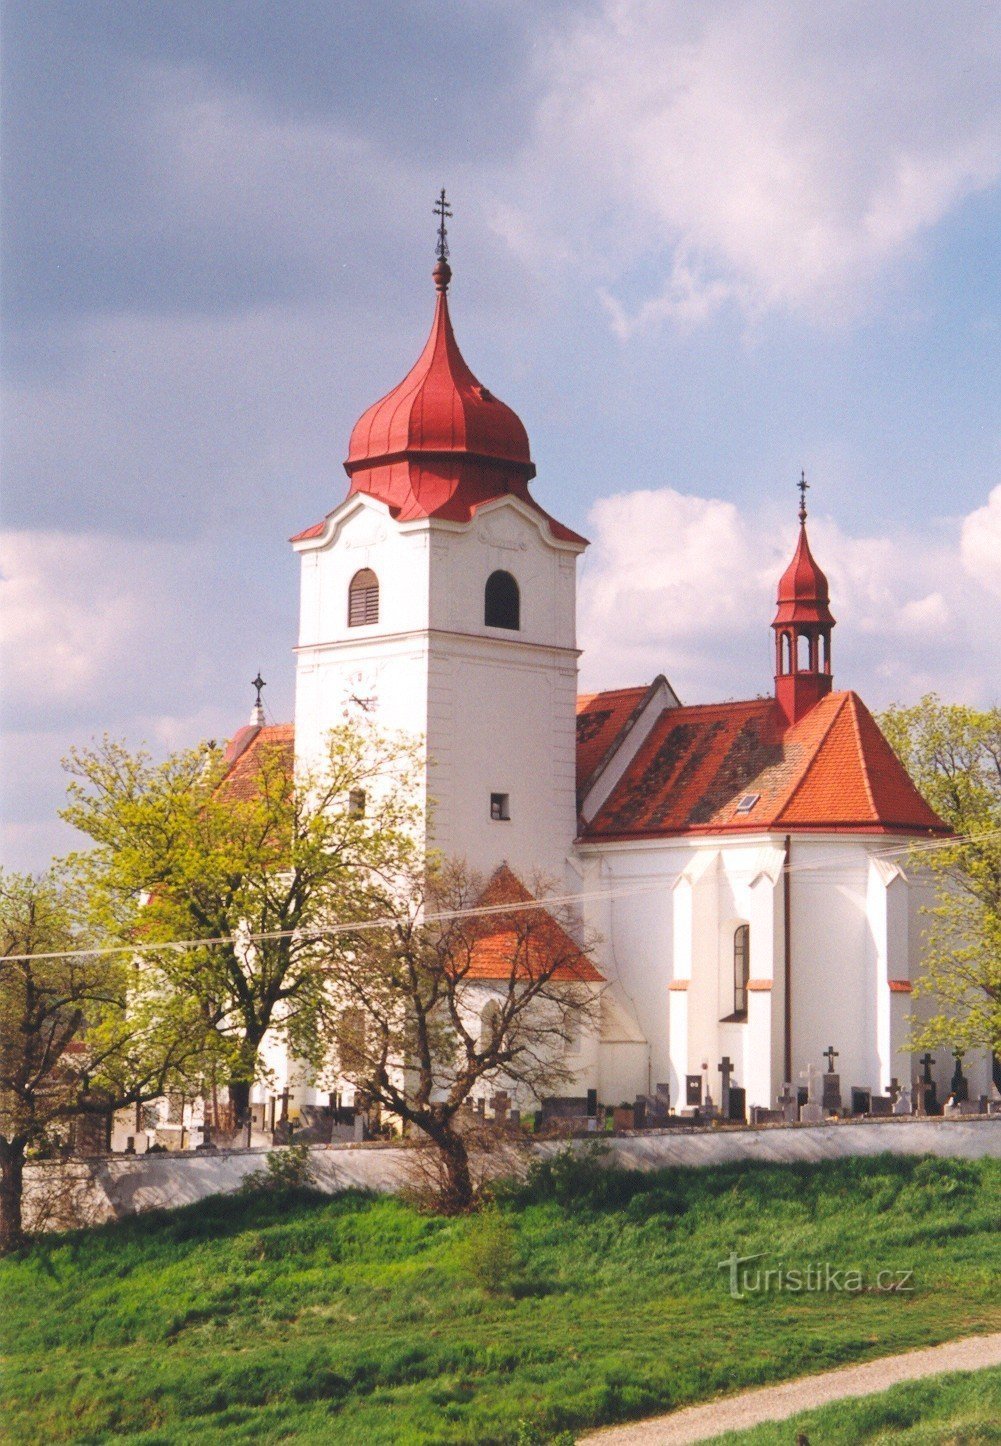 Trstěnice - Cerkev Vnebohoda sv. Kriza